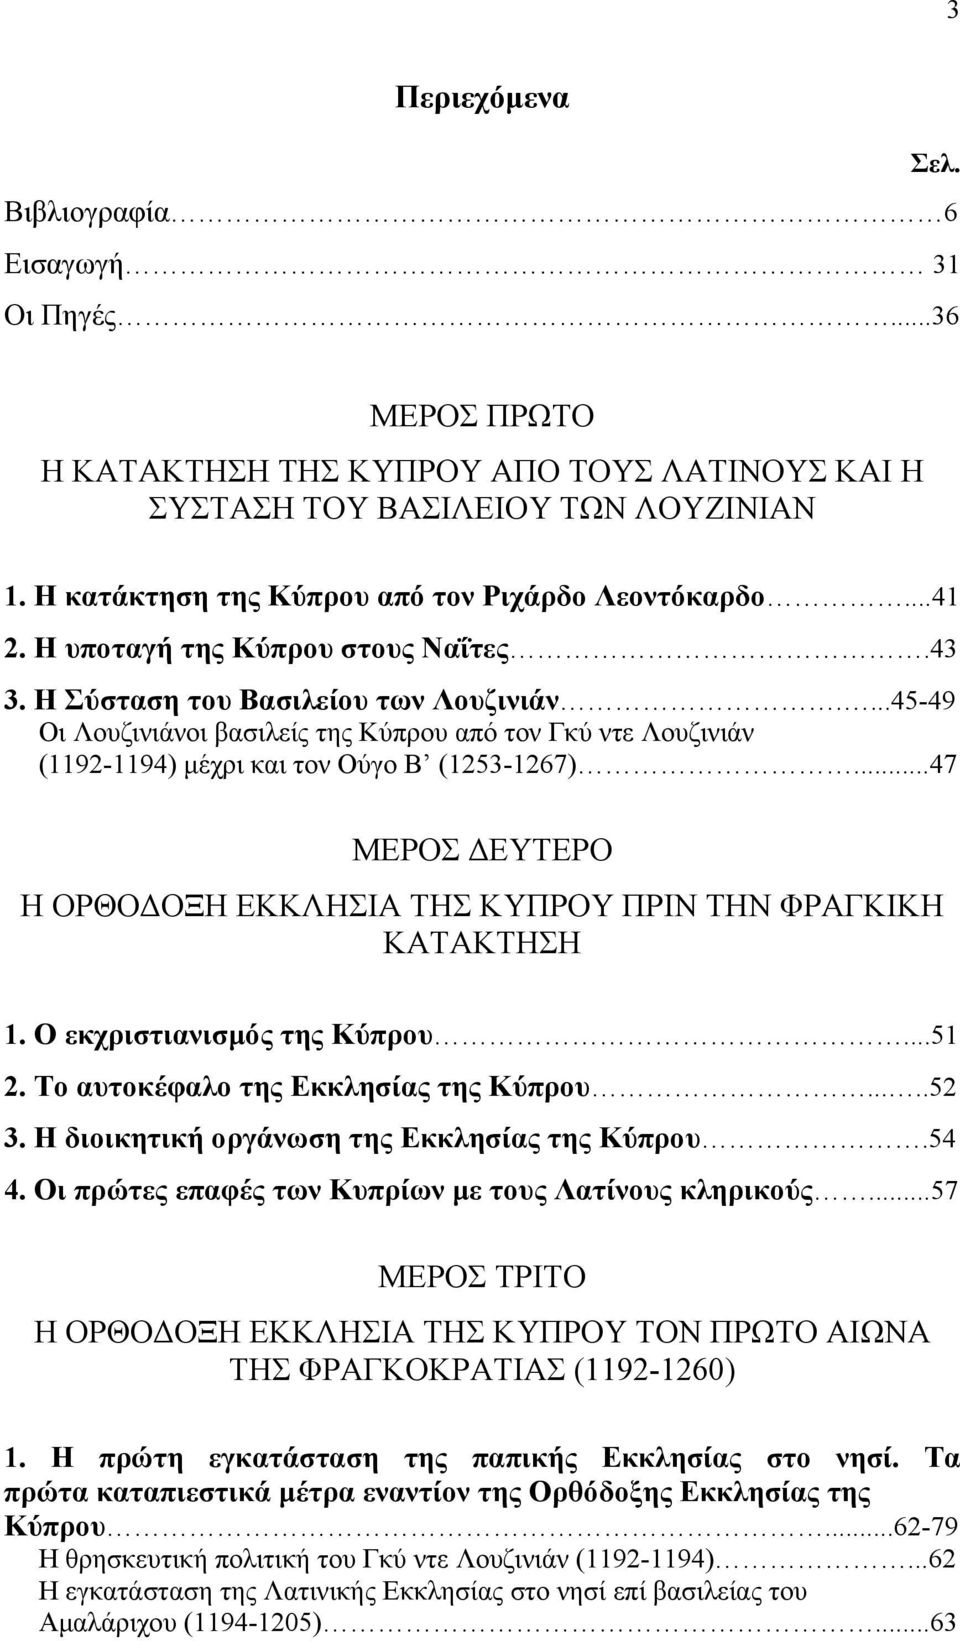 ...45-49 Οι Λουζινιάνοι βασιλείς της Κύπρου από τον Γκύ ντε Λουζινιάν (1192-1194) µέχρι και τον Ούγο Β (1253-1267)...47 ΜΕΡΟΣ ΕΥΤΕΡΟ Η ΟΡΘΟ ΟΞΗ ΕΚΚΛΗΣΙΑ ΤΗΣ ΚΥΠΡΟΥ ΠΡΙΝ ΤΗΝ ΦΡΑΓΚΙΚΗ ΚΑΤΑΚΤΗΣΗ 1.